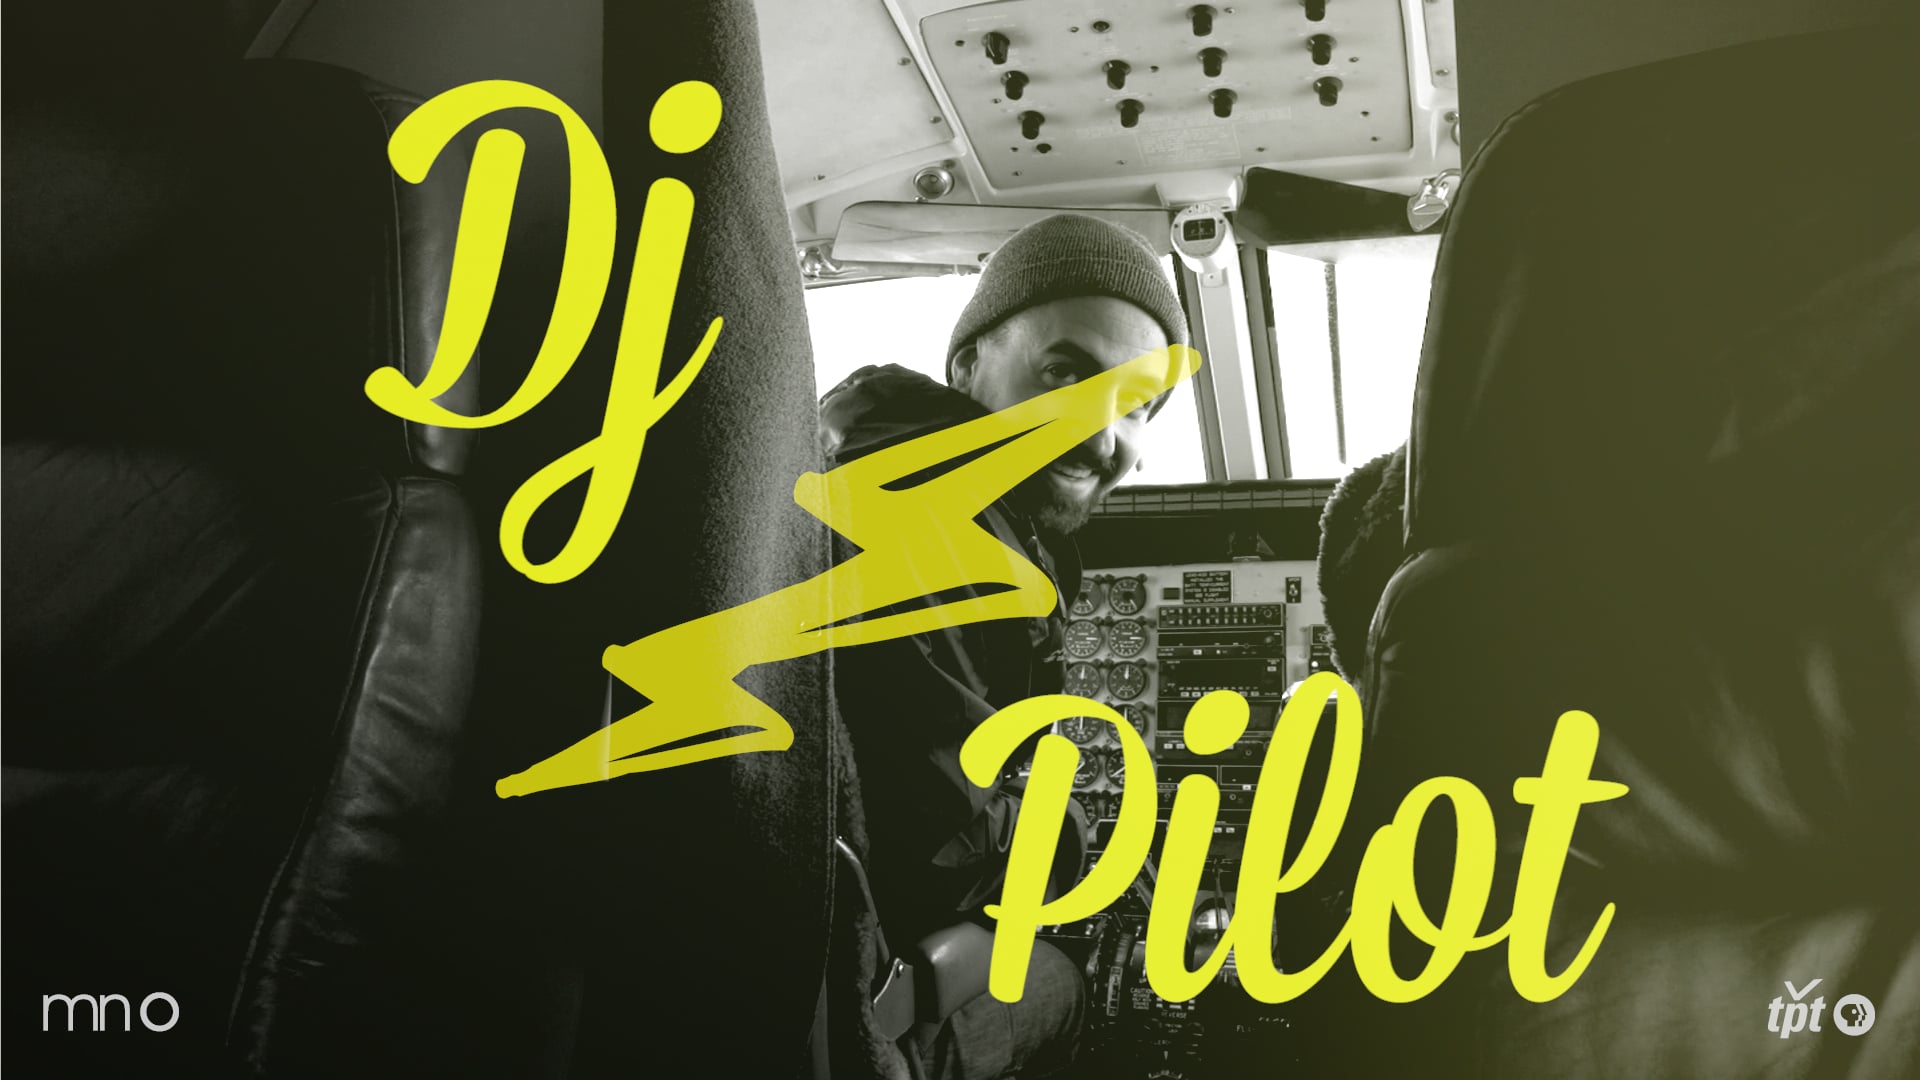 Artist Day Jobs: Drew Erickson - DJ/Pilot